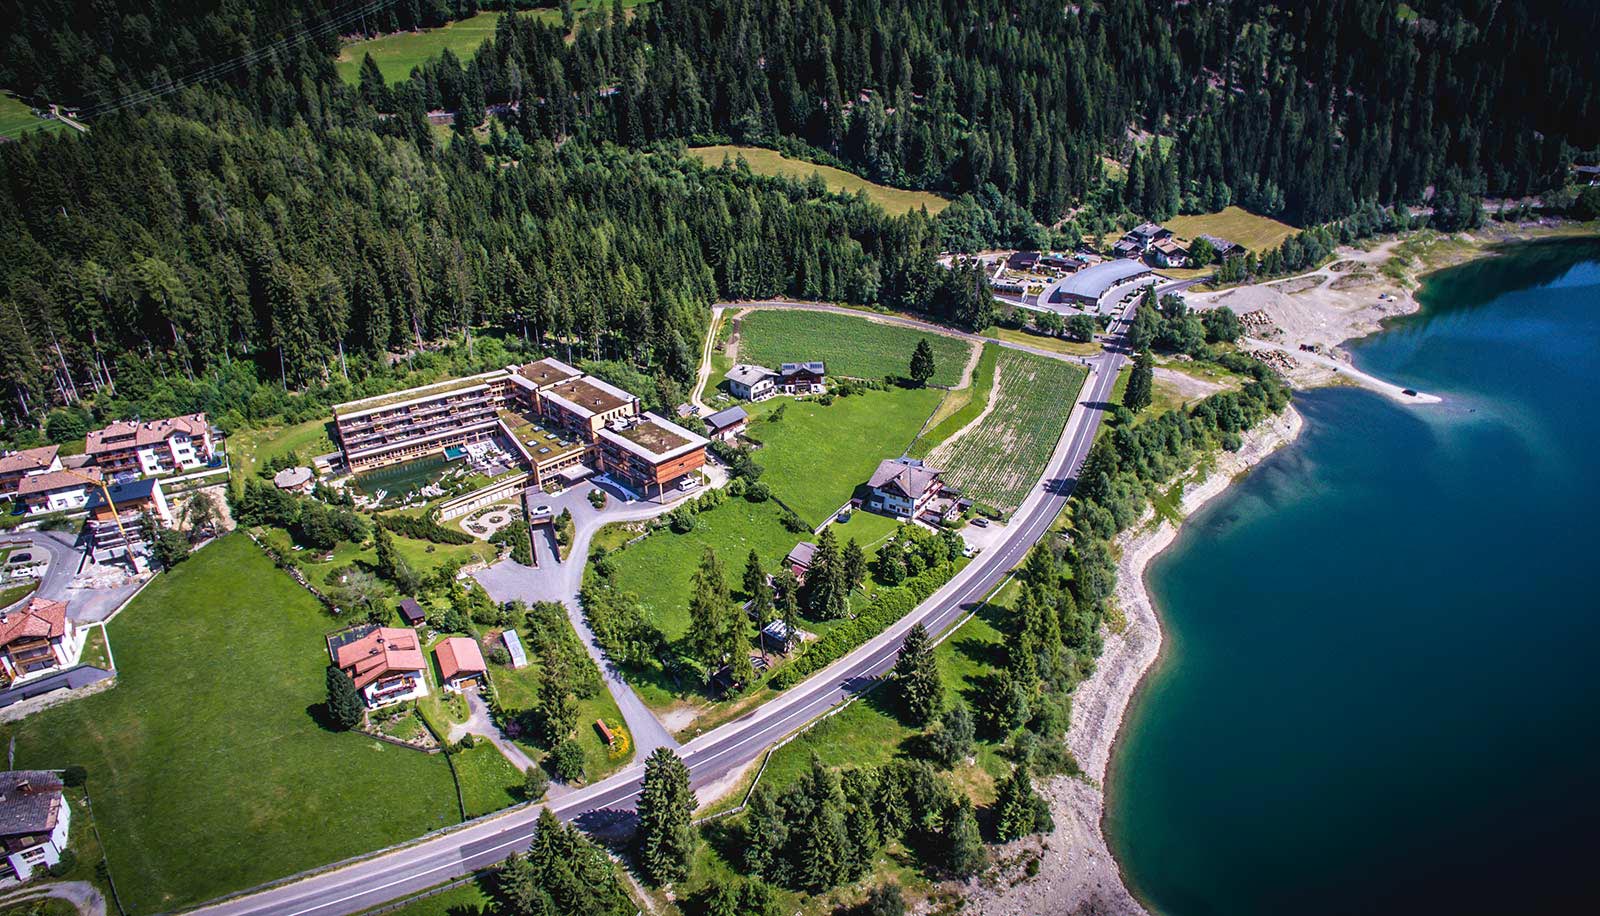 L'hotel Arosea in Val d'Ultimo sulle rive del lago visto dall'alto